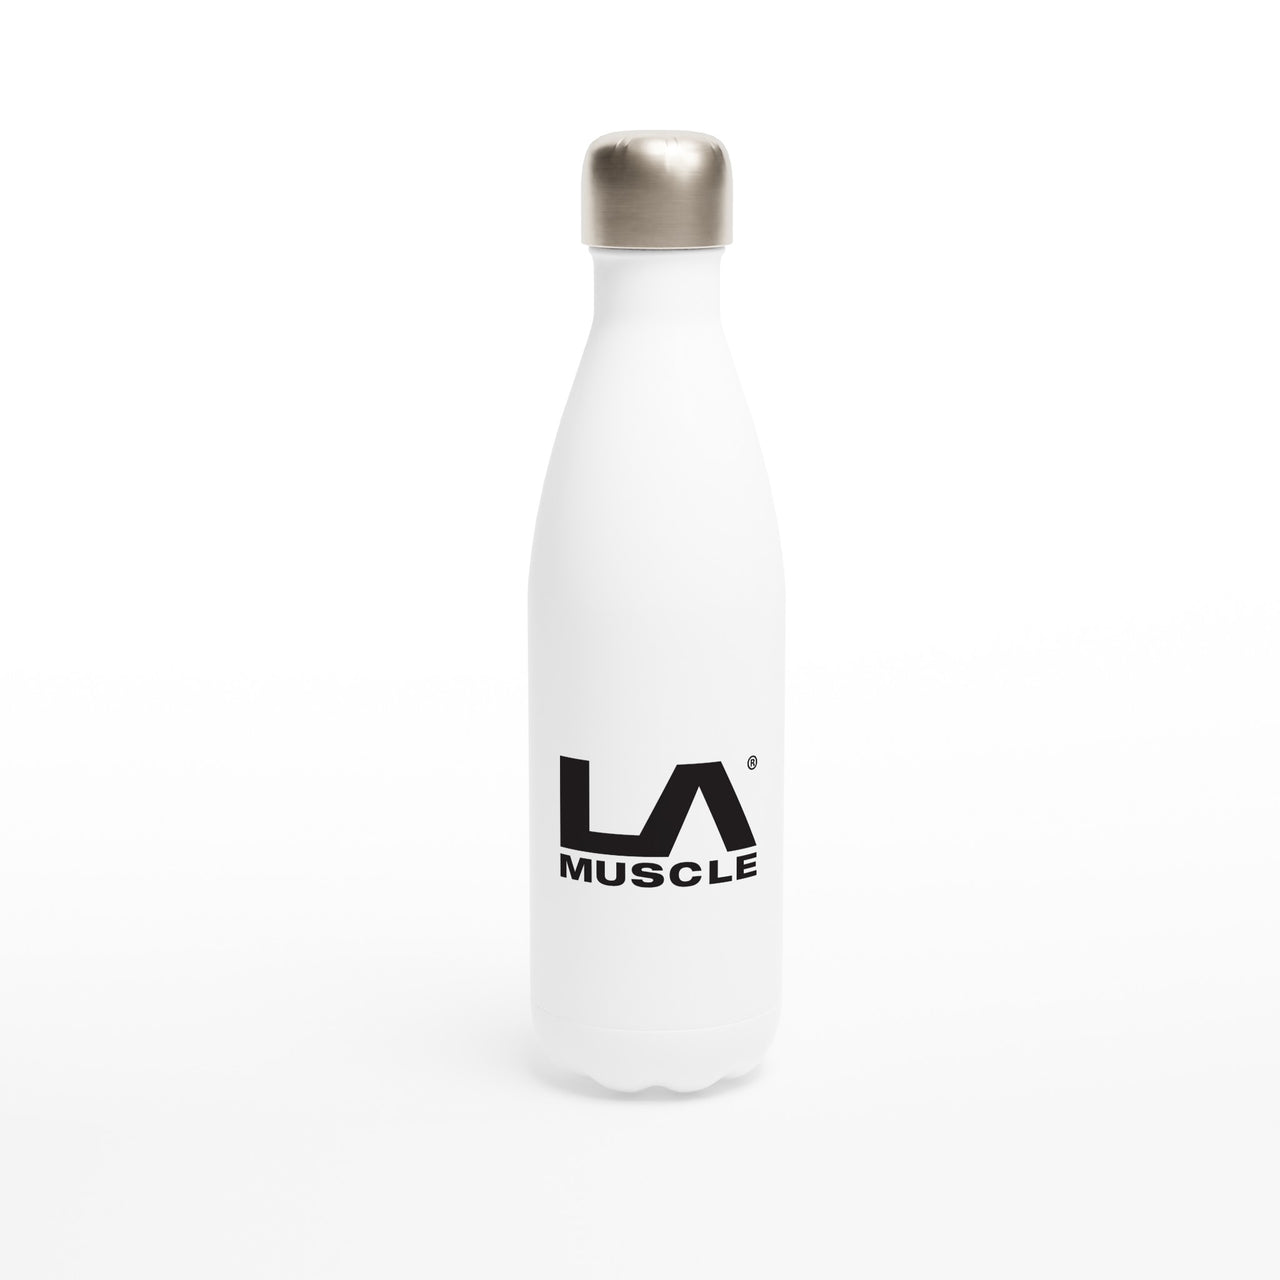 LA MUSCLE White 17oz Stainless Steel Water Bottle